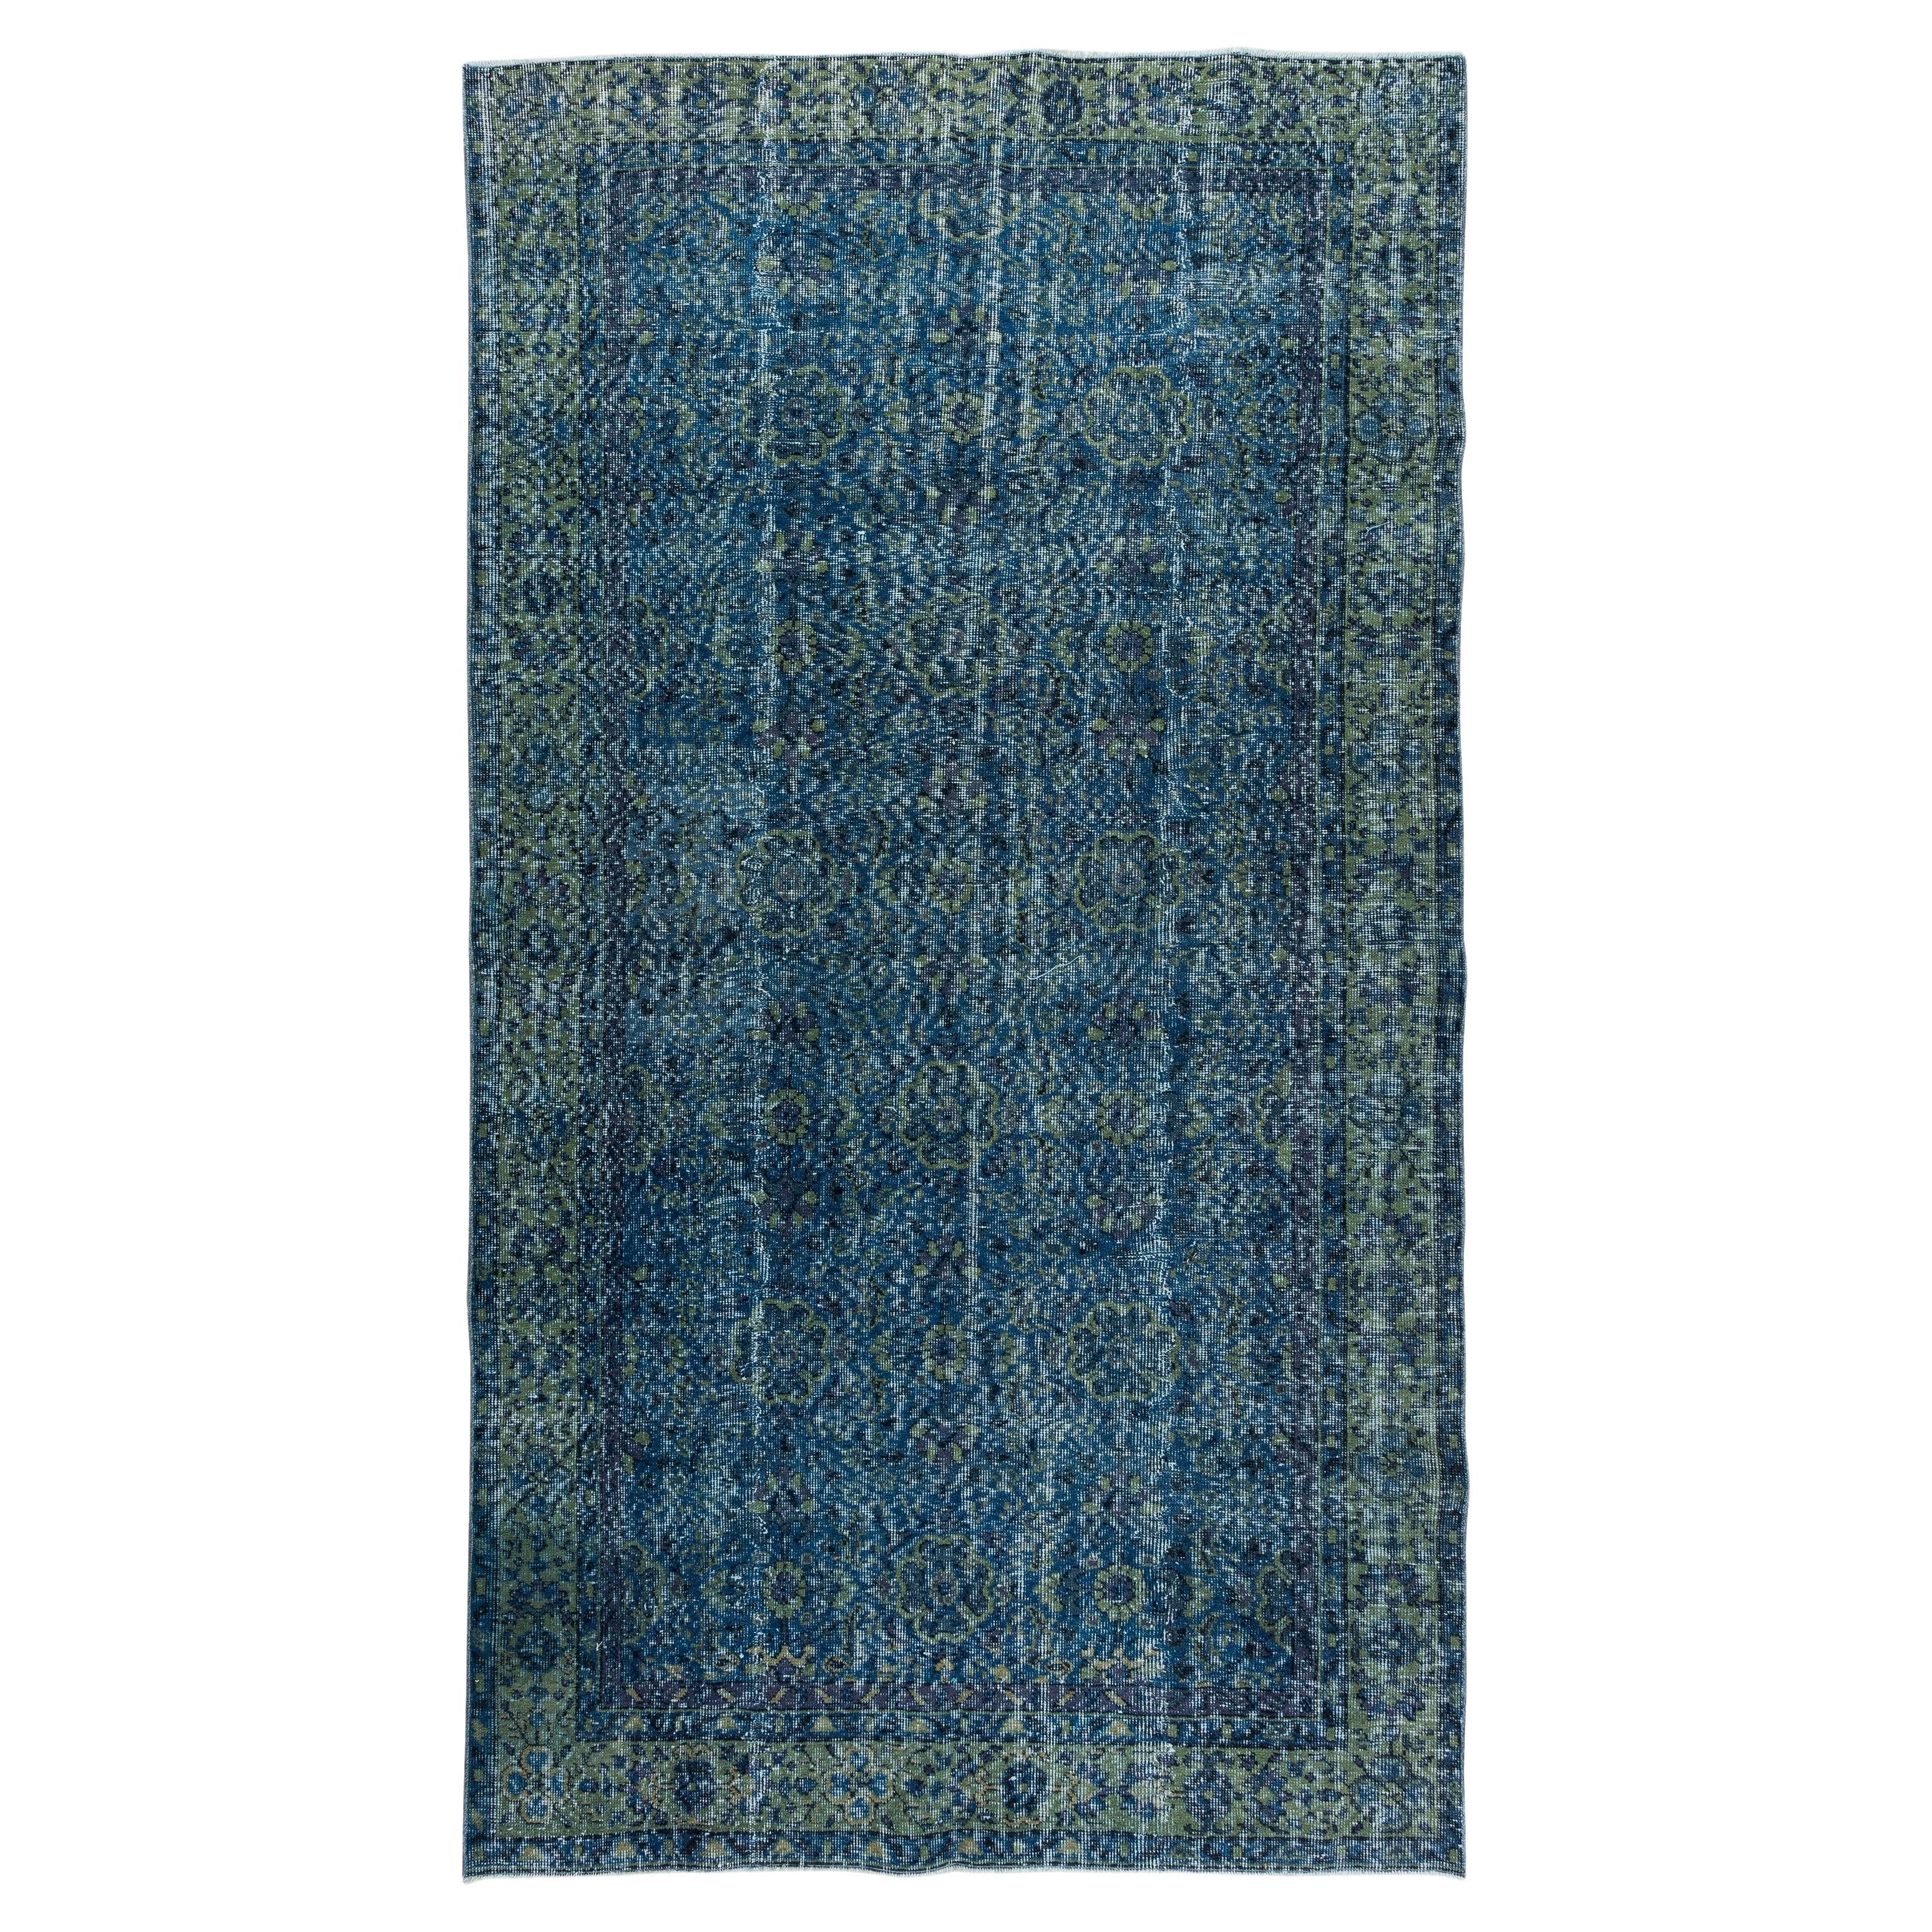 Tapis contemporain en laine turque bleue teintée à la main, fait à la main, 14,3 x 22,9 cm